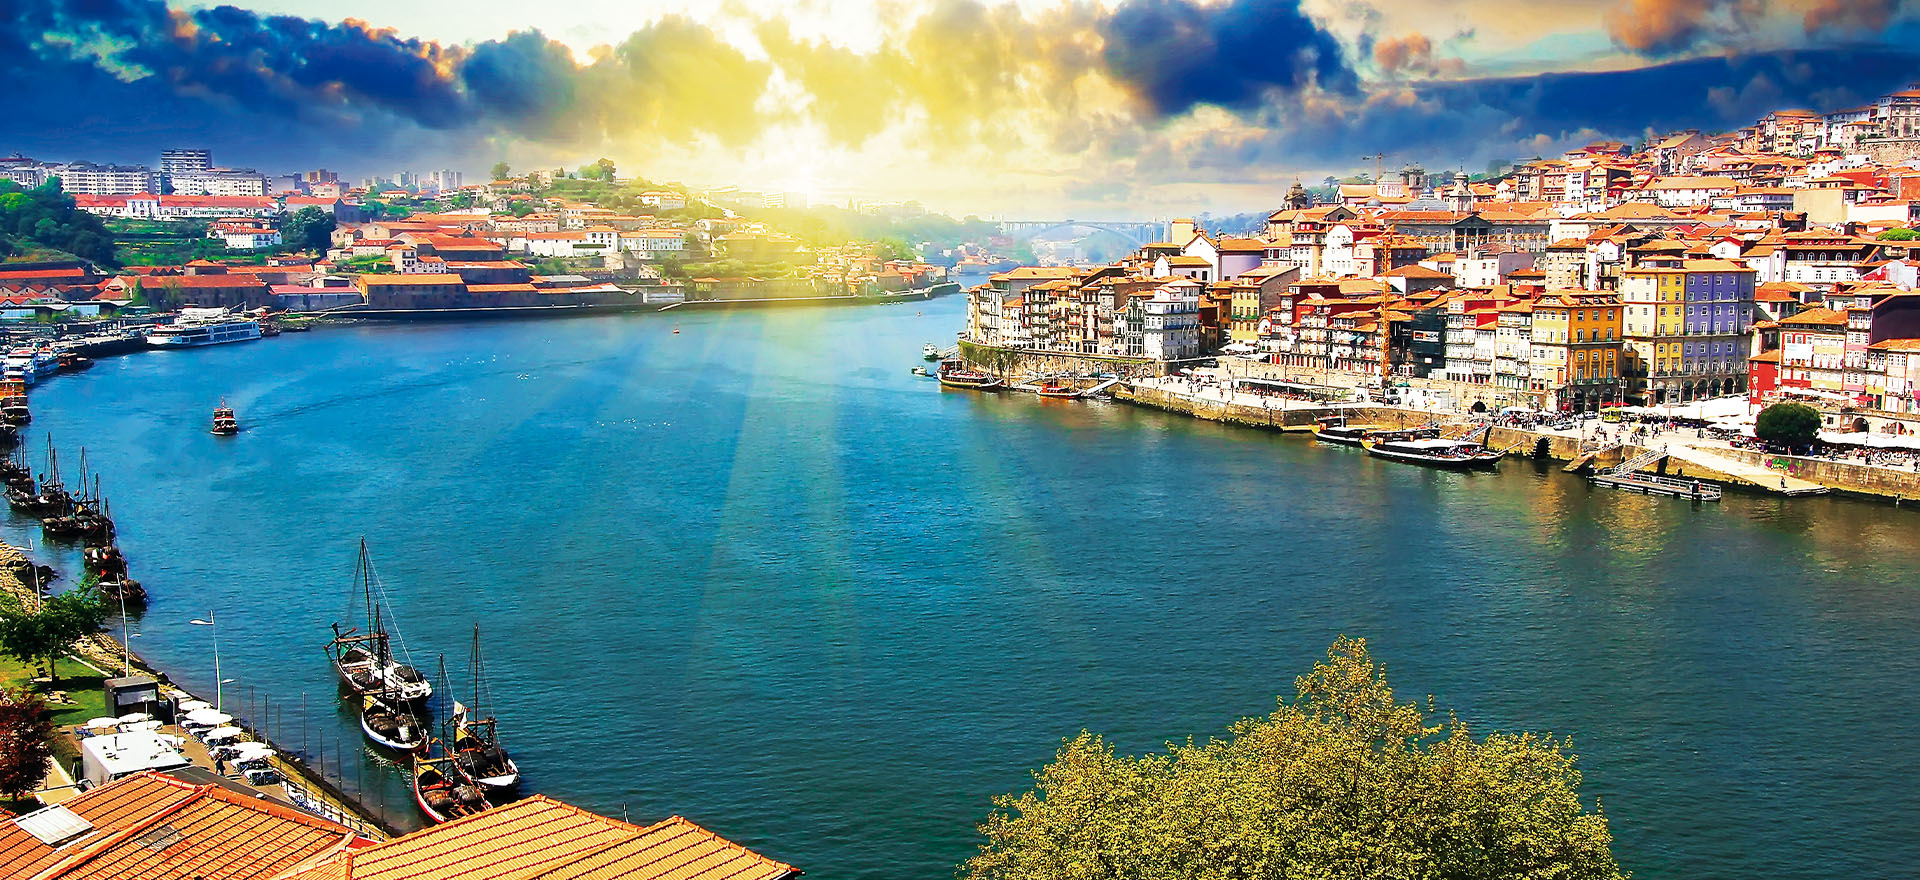 riviera travel river cruise douro